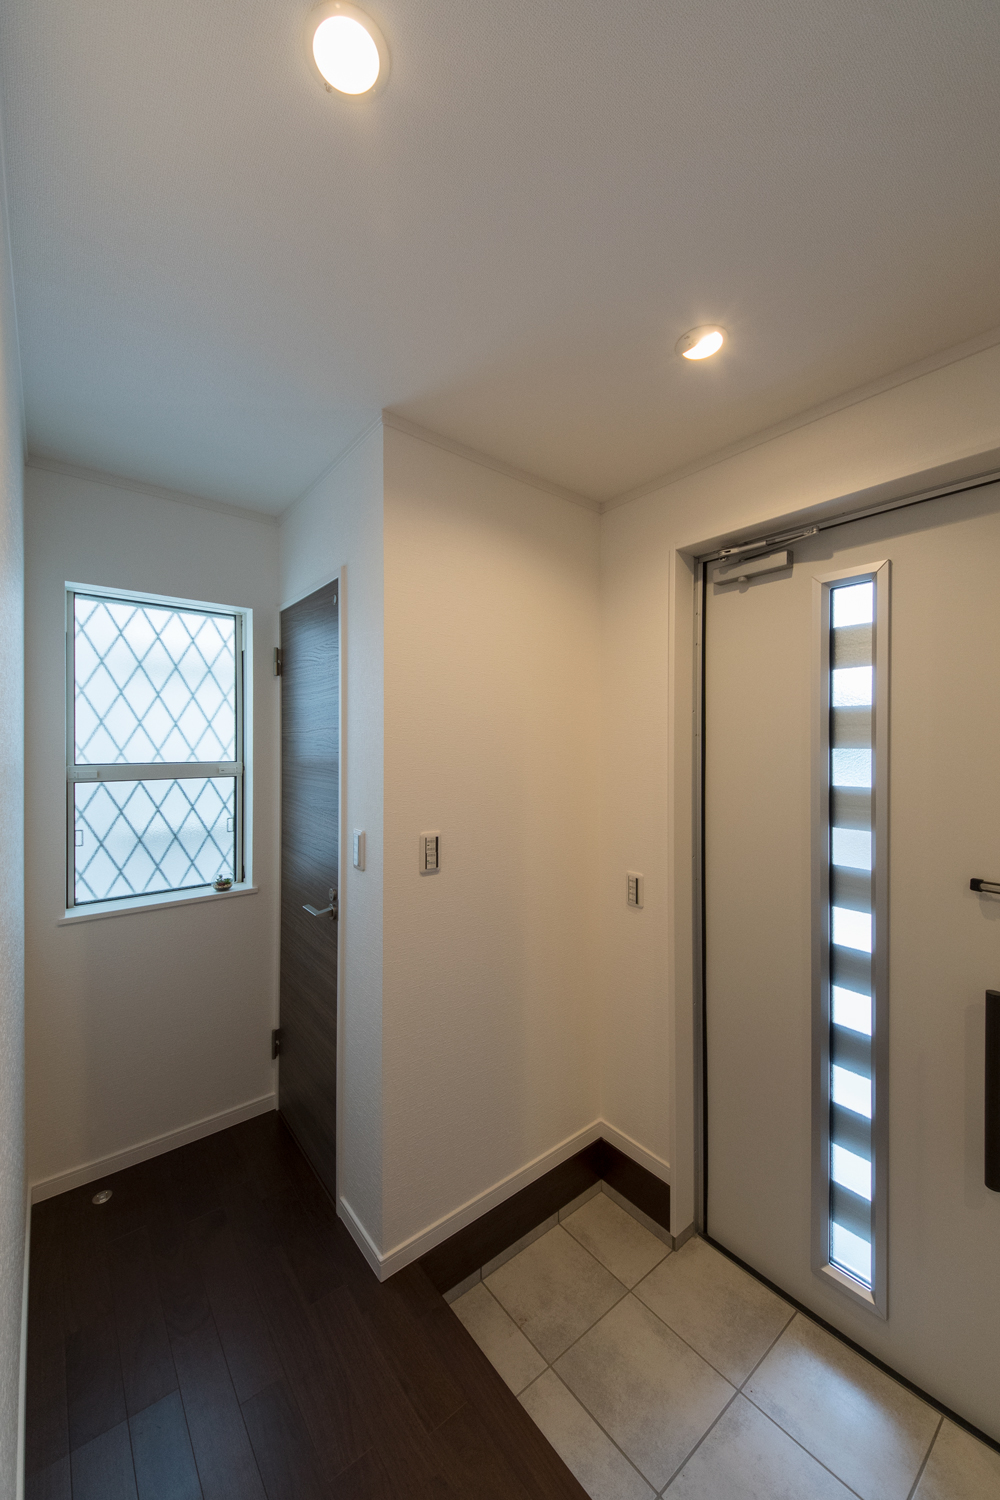 ホワイト×ブラウンのナチュラルな配色の玄関。ドアの窓から自然の光が差し込みます。